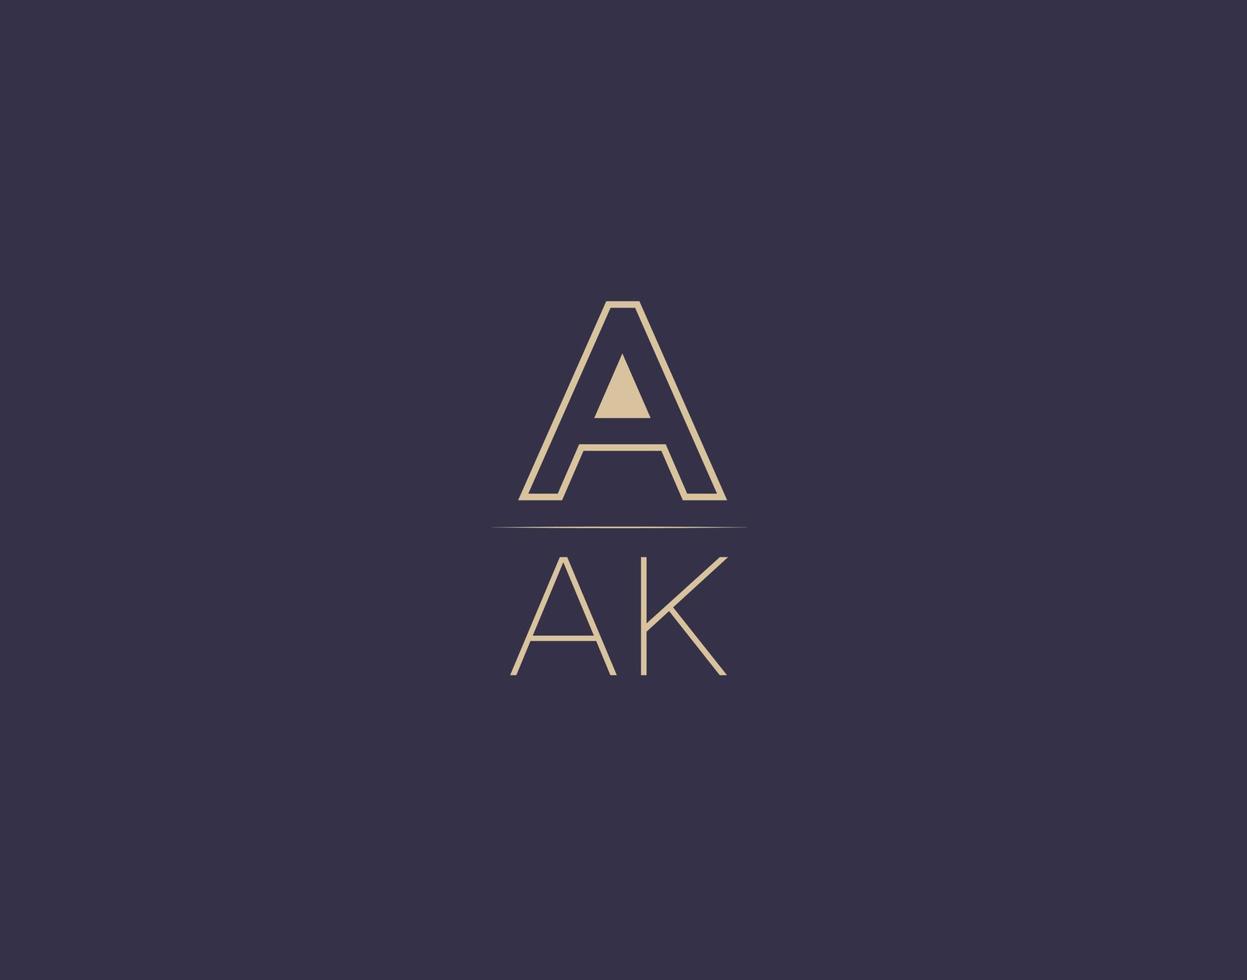 AAK letter logo design modern minimalist vector images